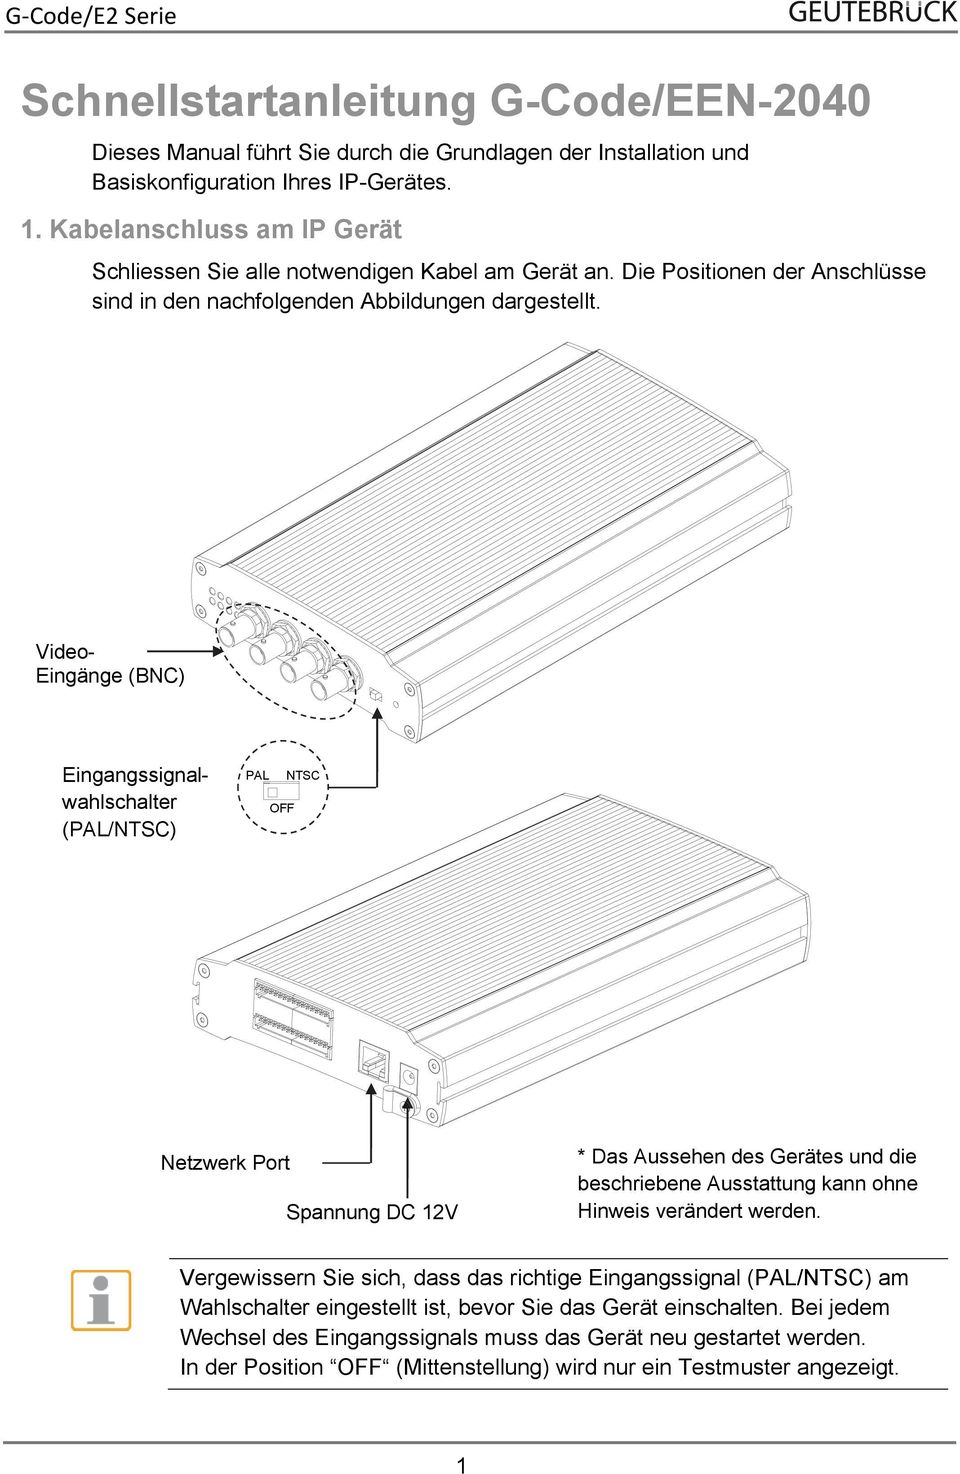 Video- Eingänge (BNC) Eingangssignalwahlschalter (PAL/NTSC) PAL OFF NTSC Netzwerk Port Spannung DC 12V * Das Aussehen des Gerätes und die beschriebene Ausstattung kann ohne Hinweis verändert